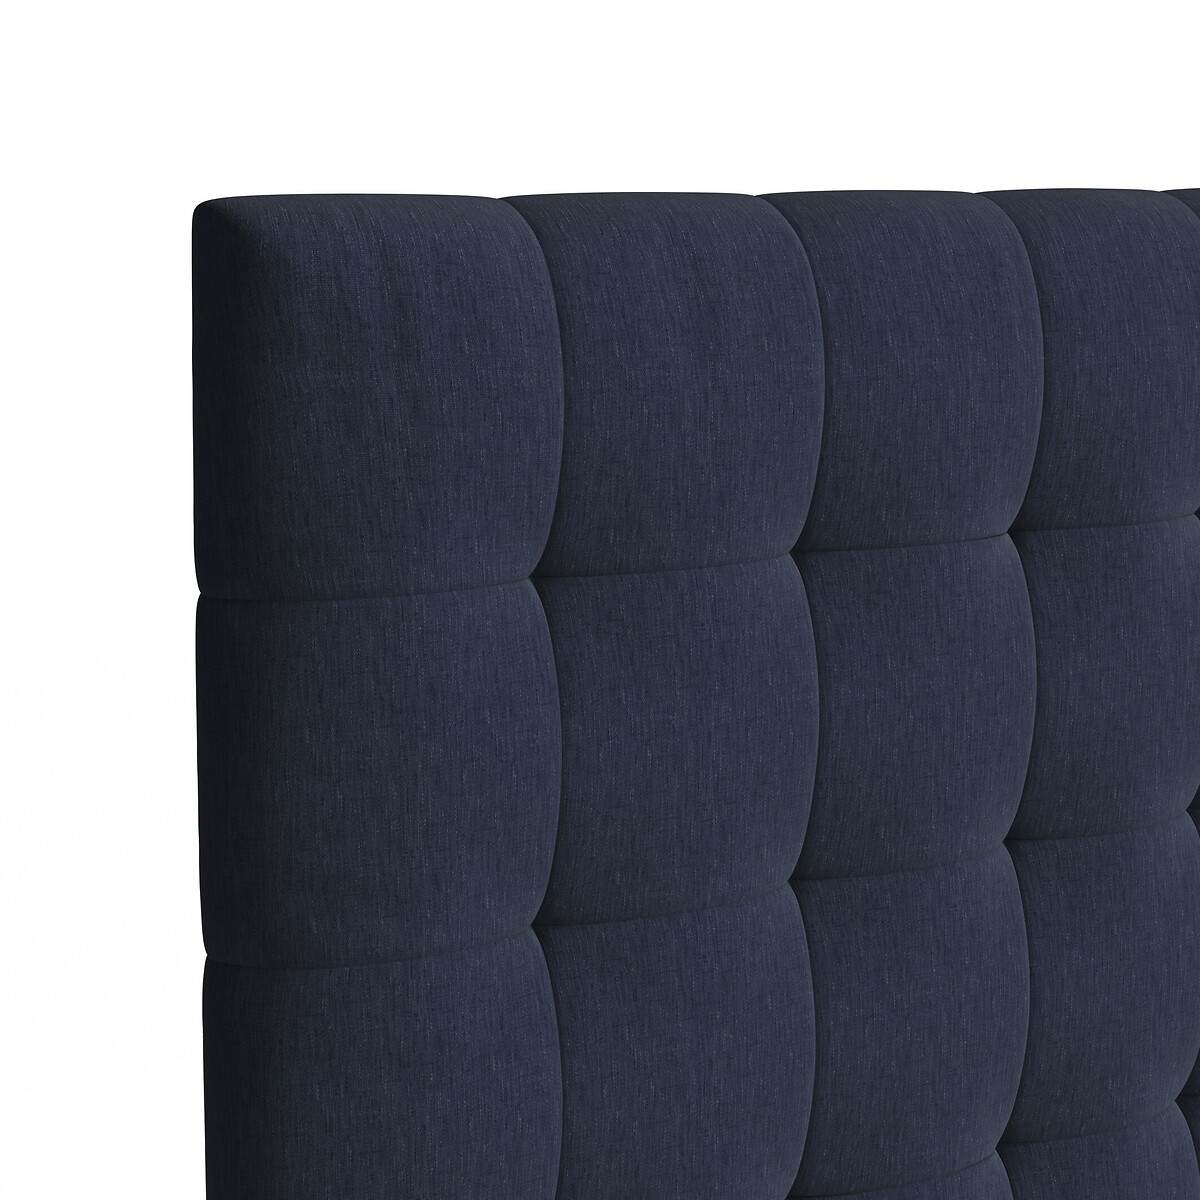 Изголовье La Redoute Кровати с обивкой из осветленного льна В см SELVE 160 см синий, размер 160 см - фото 3